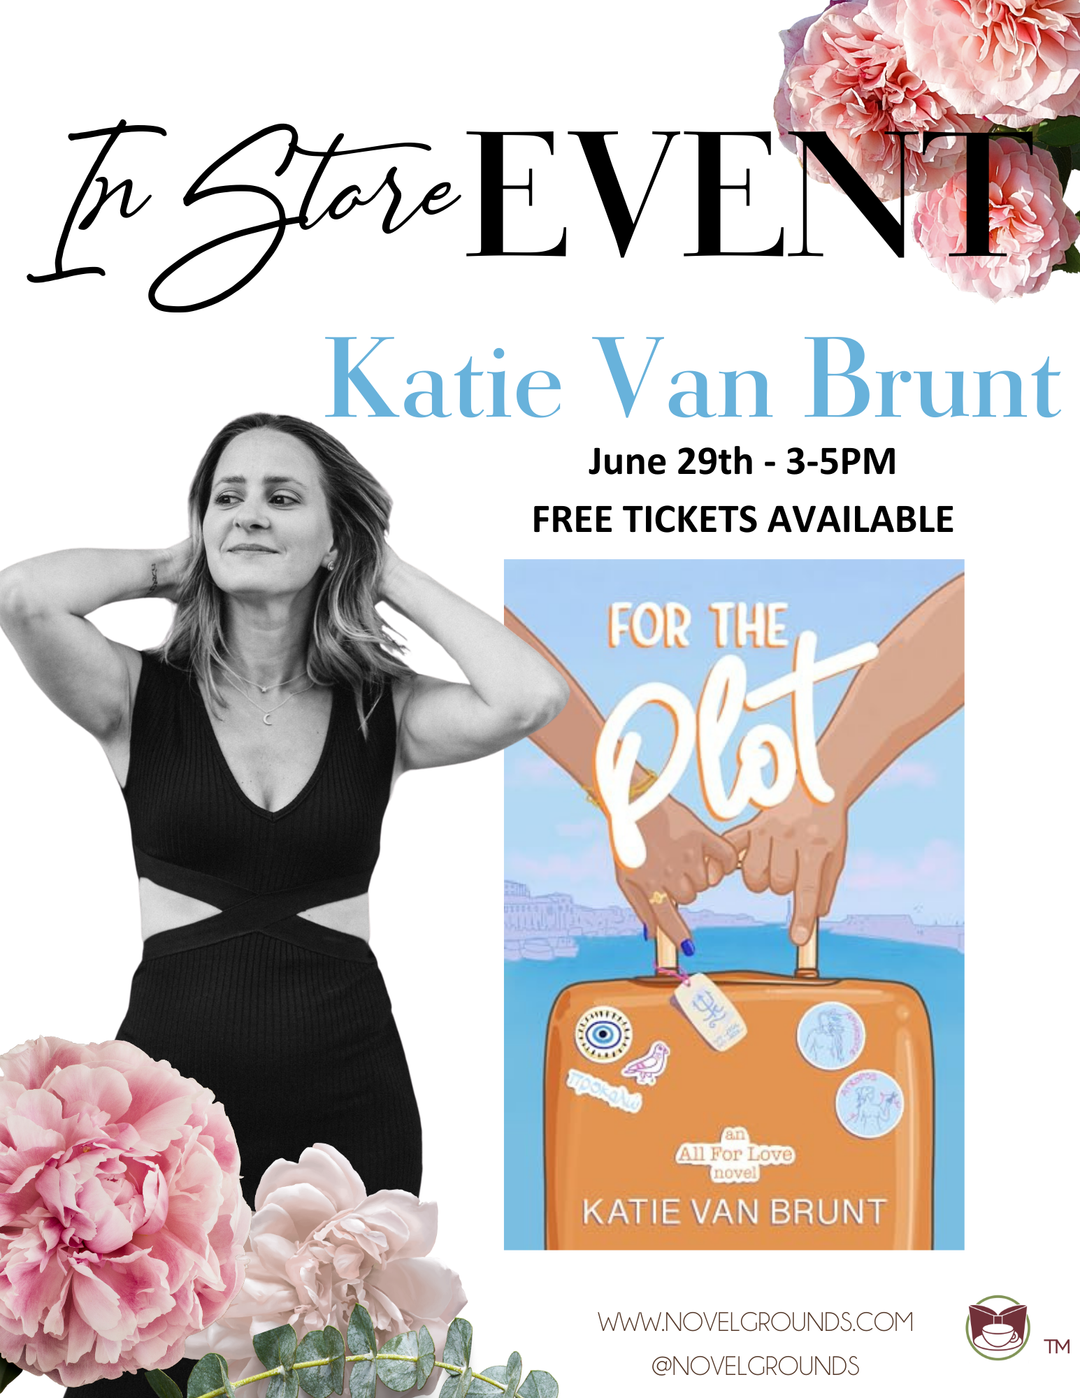 Katie Van Brunt Signing Event Ticket - June 29th - 3-5pm